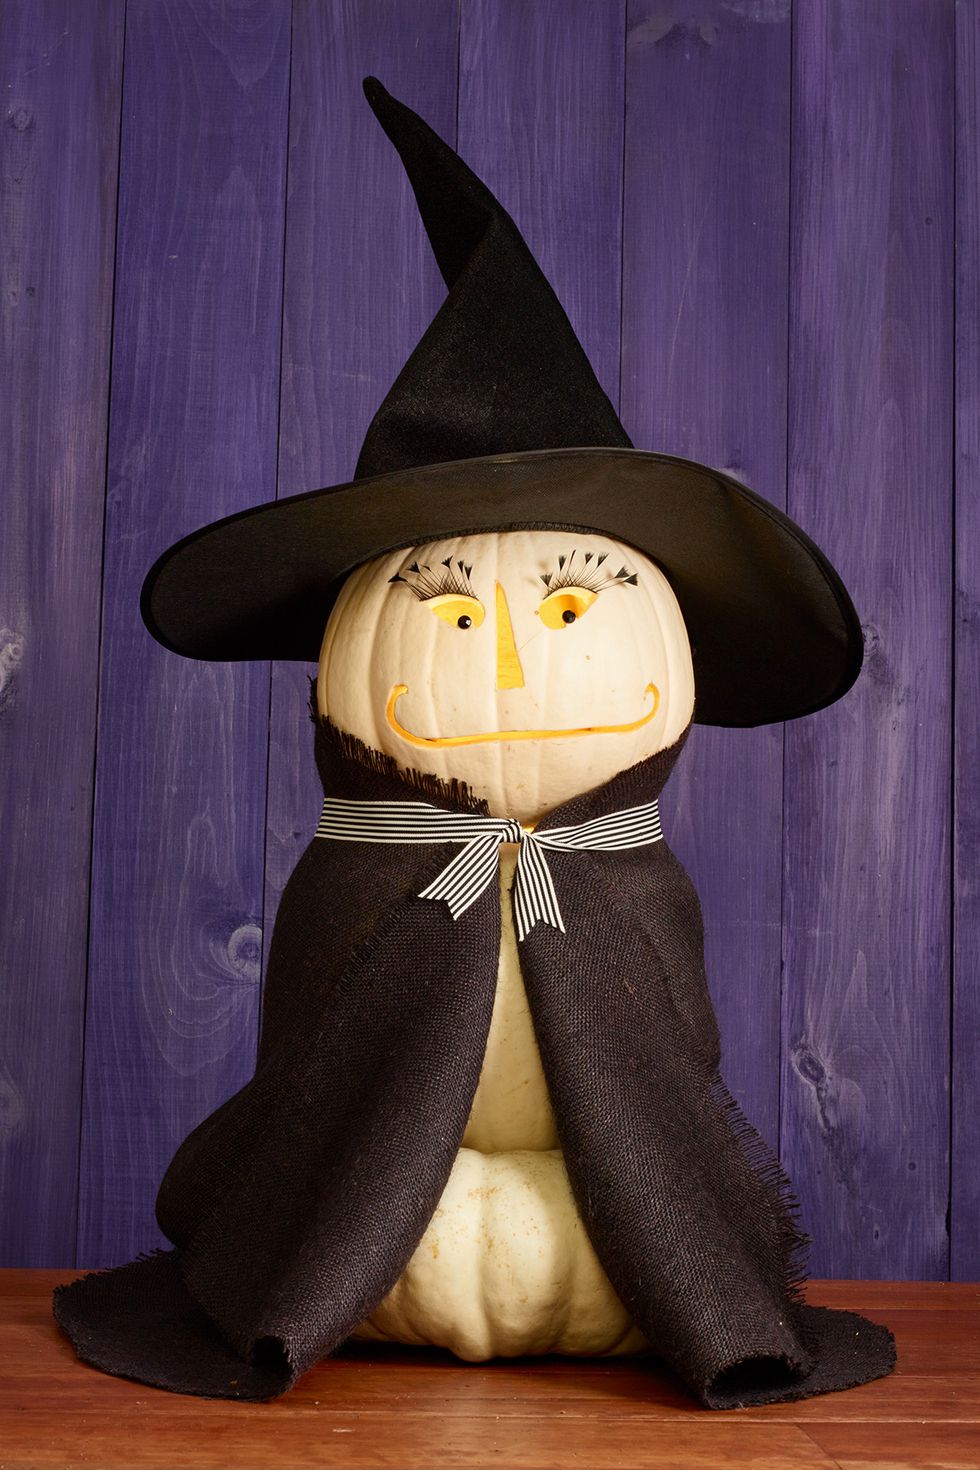 Pumpkin carving ideas witch 1538760065.jpg